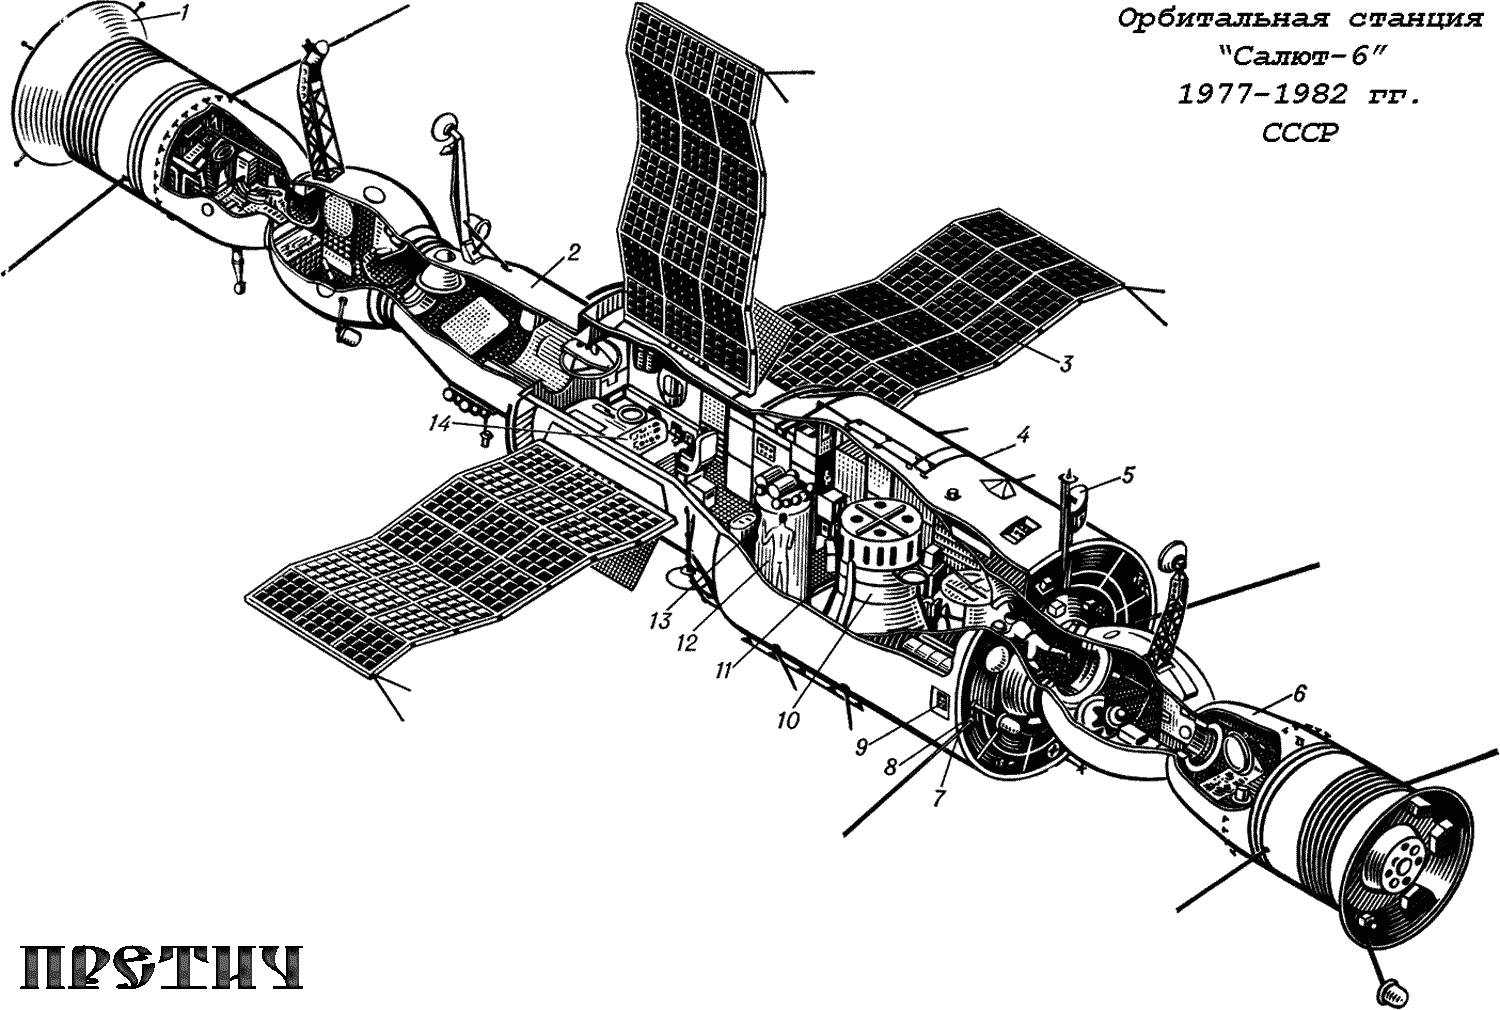 Орбитальная научная станция Салют-6